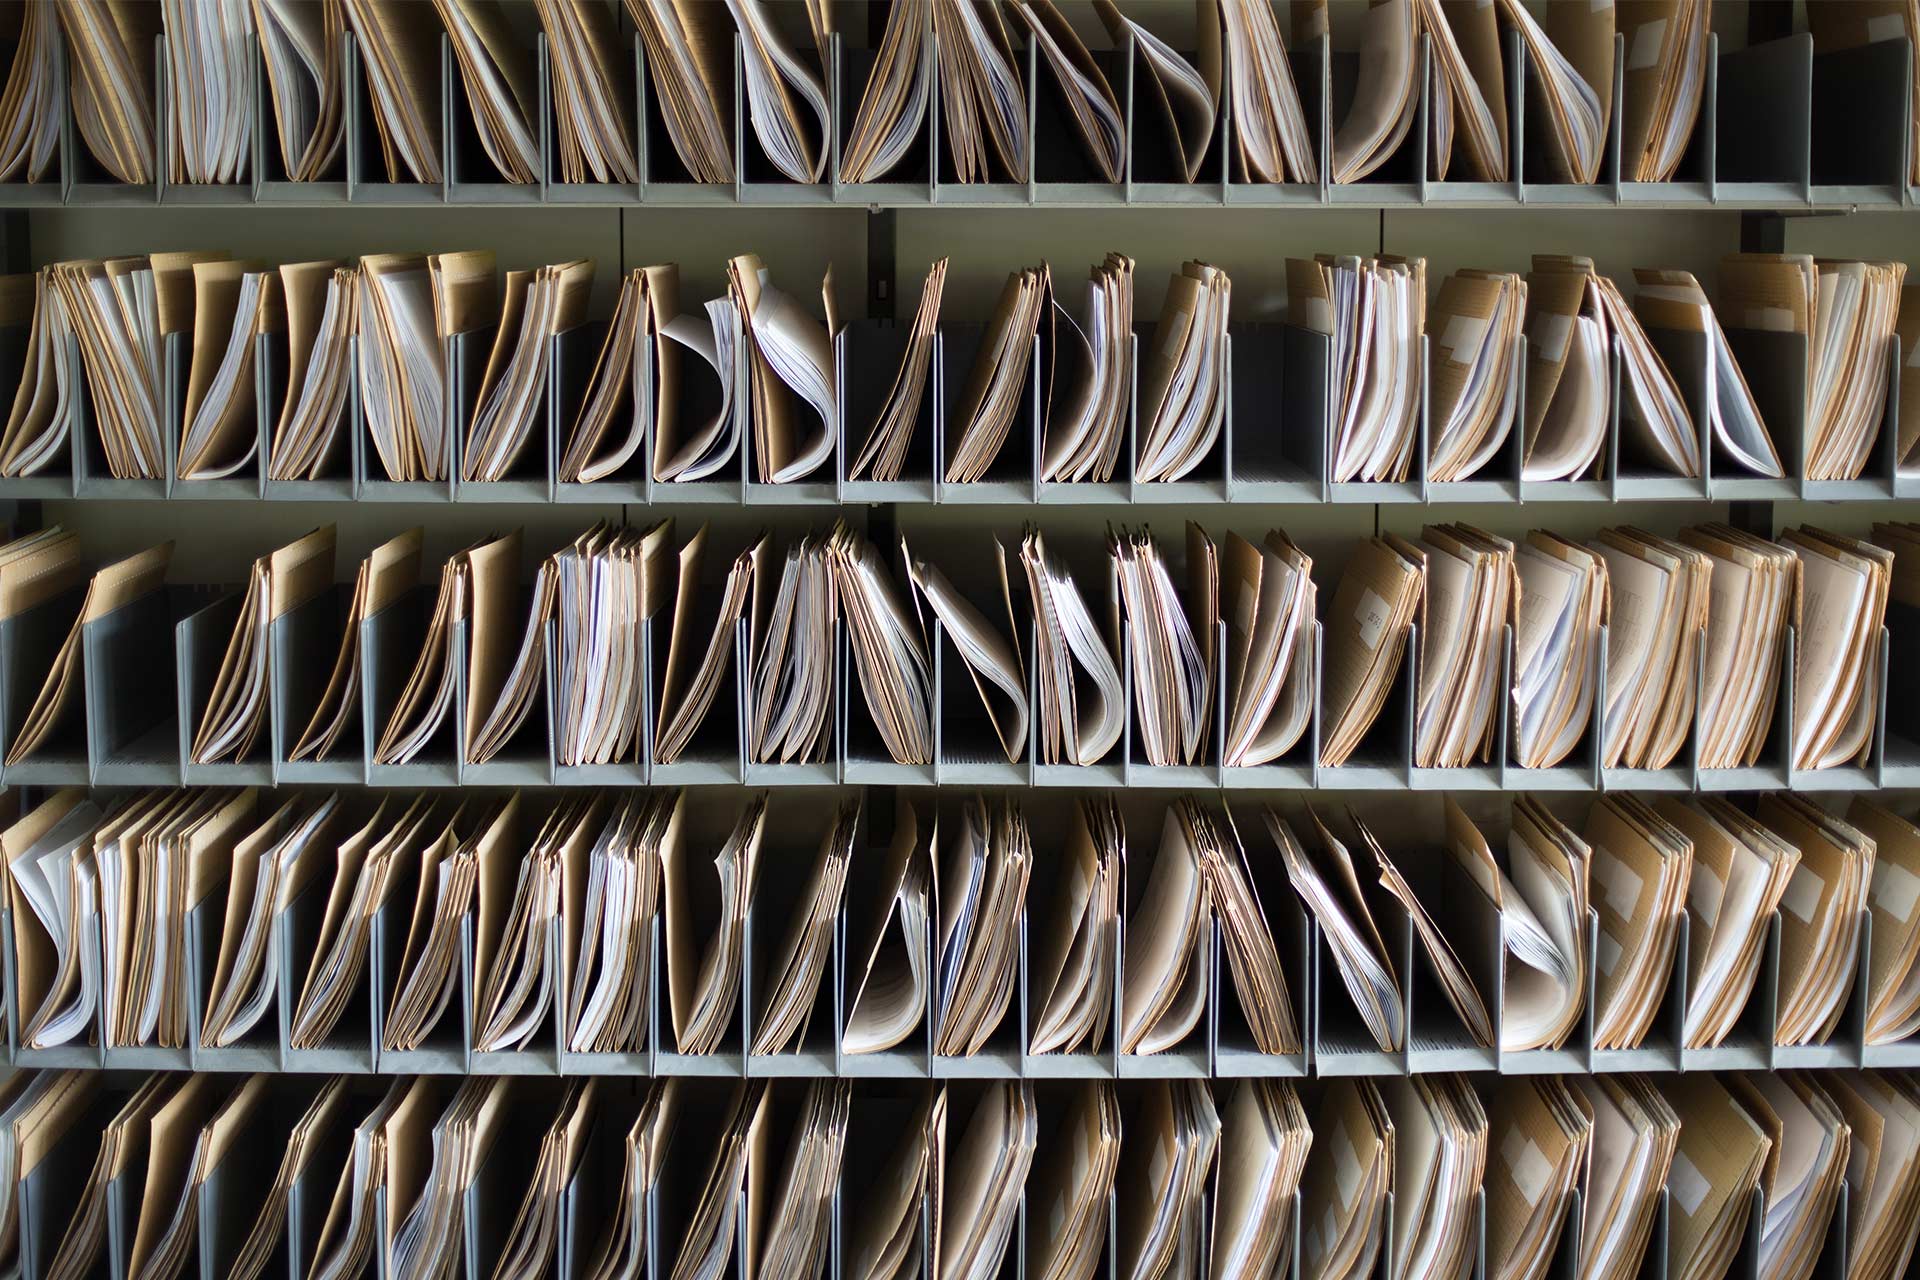 Паперові файли, що зберігаються у вигляді записів і становлять процес резервного копіювання комп'ютера як форму архівування